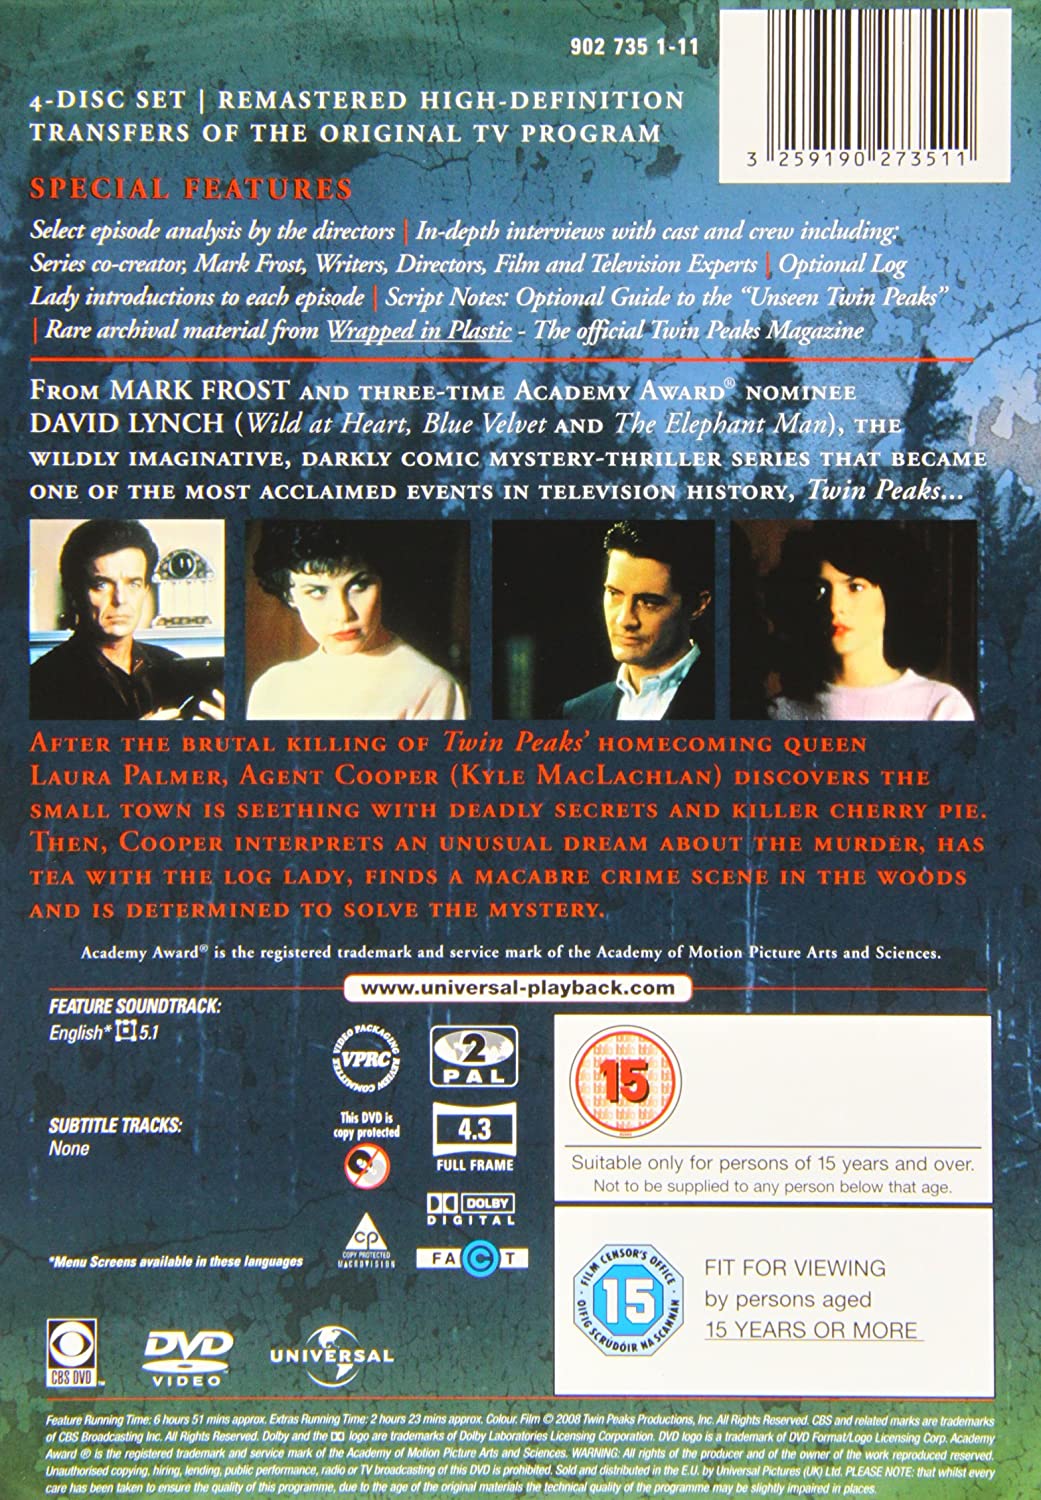 Twin Peaks - Saison 1 complète [DVD] [1990]